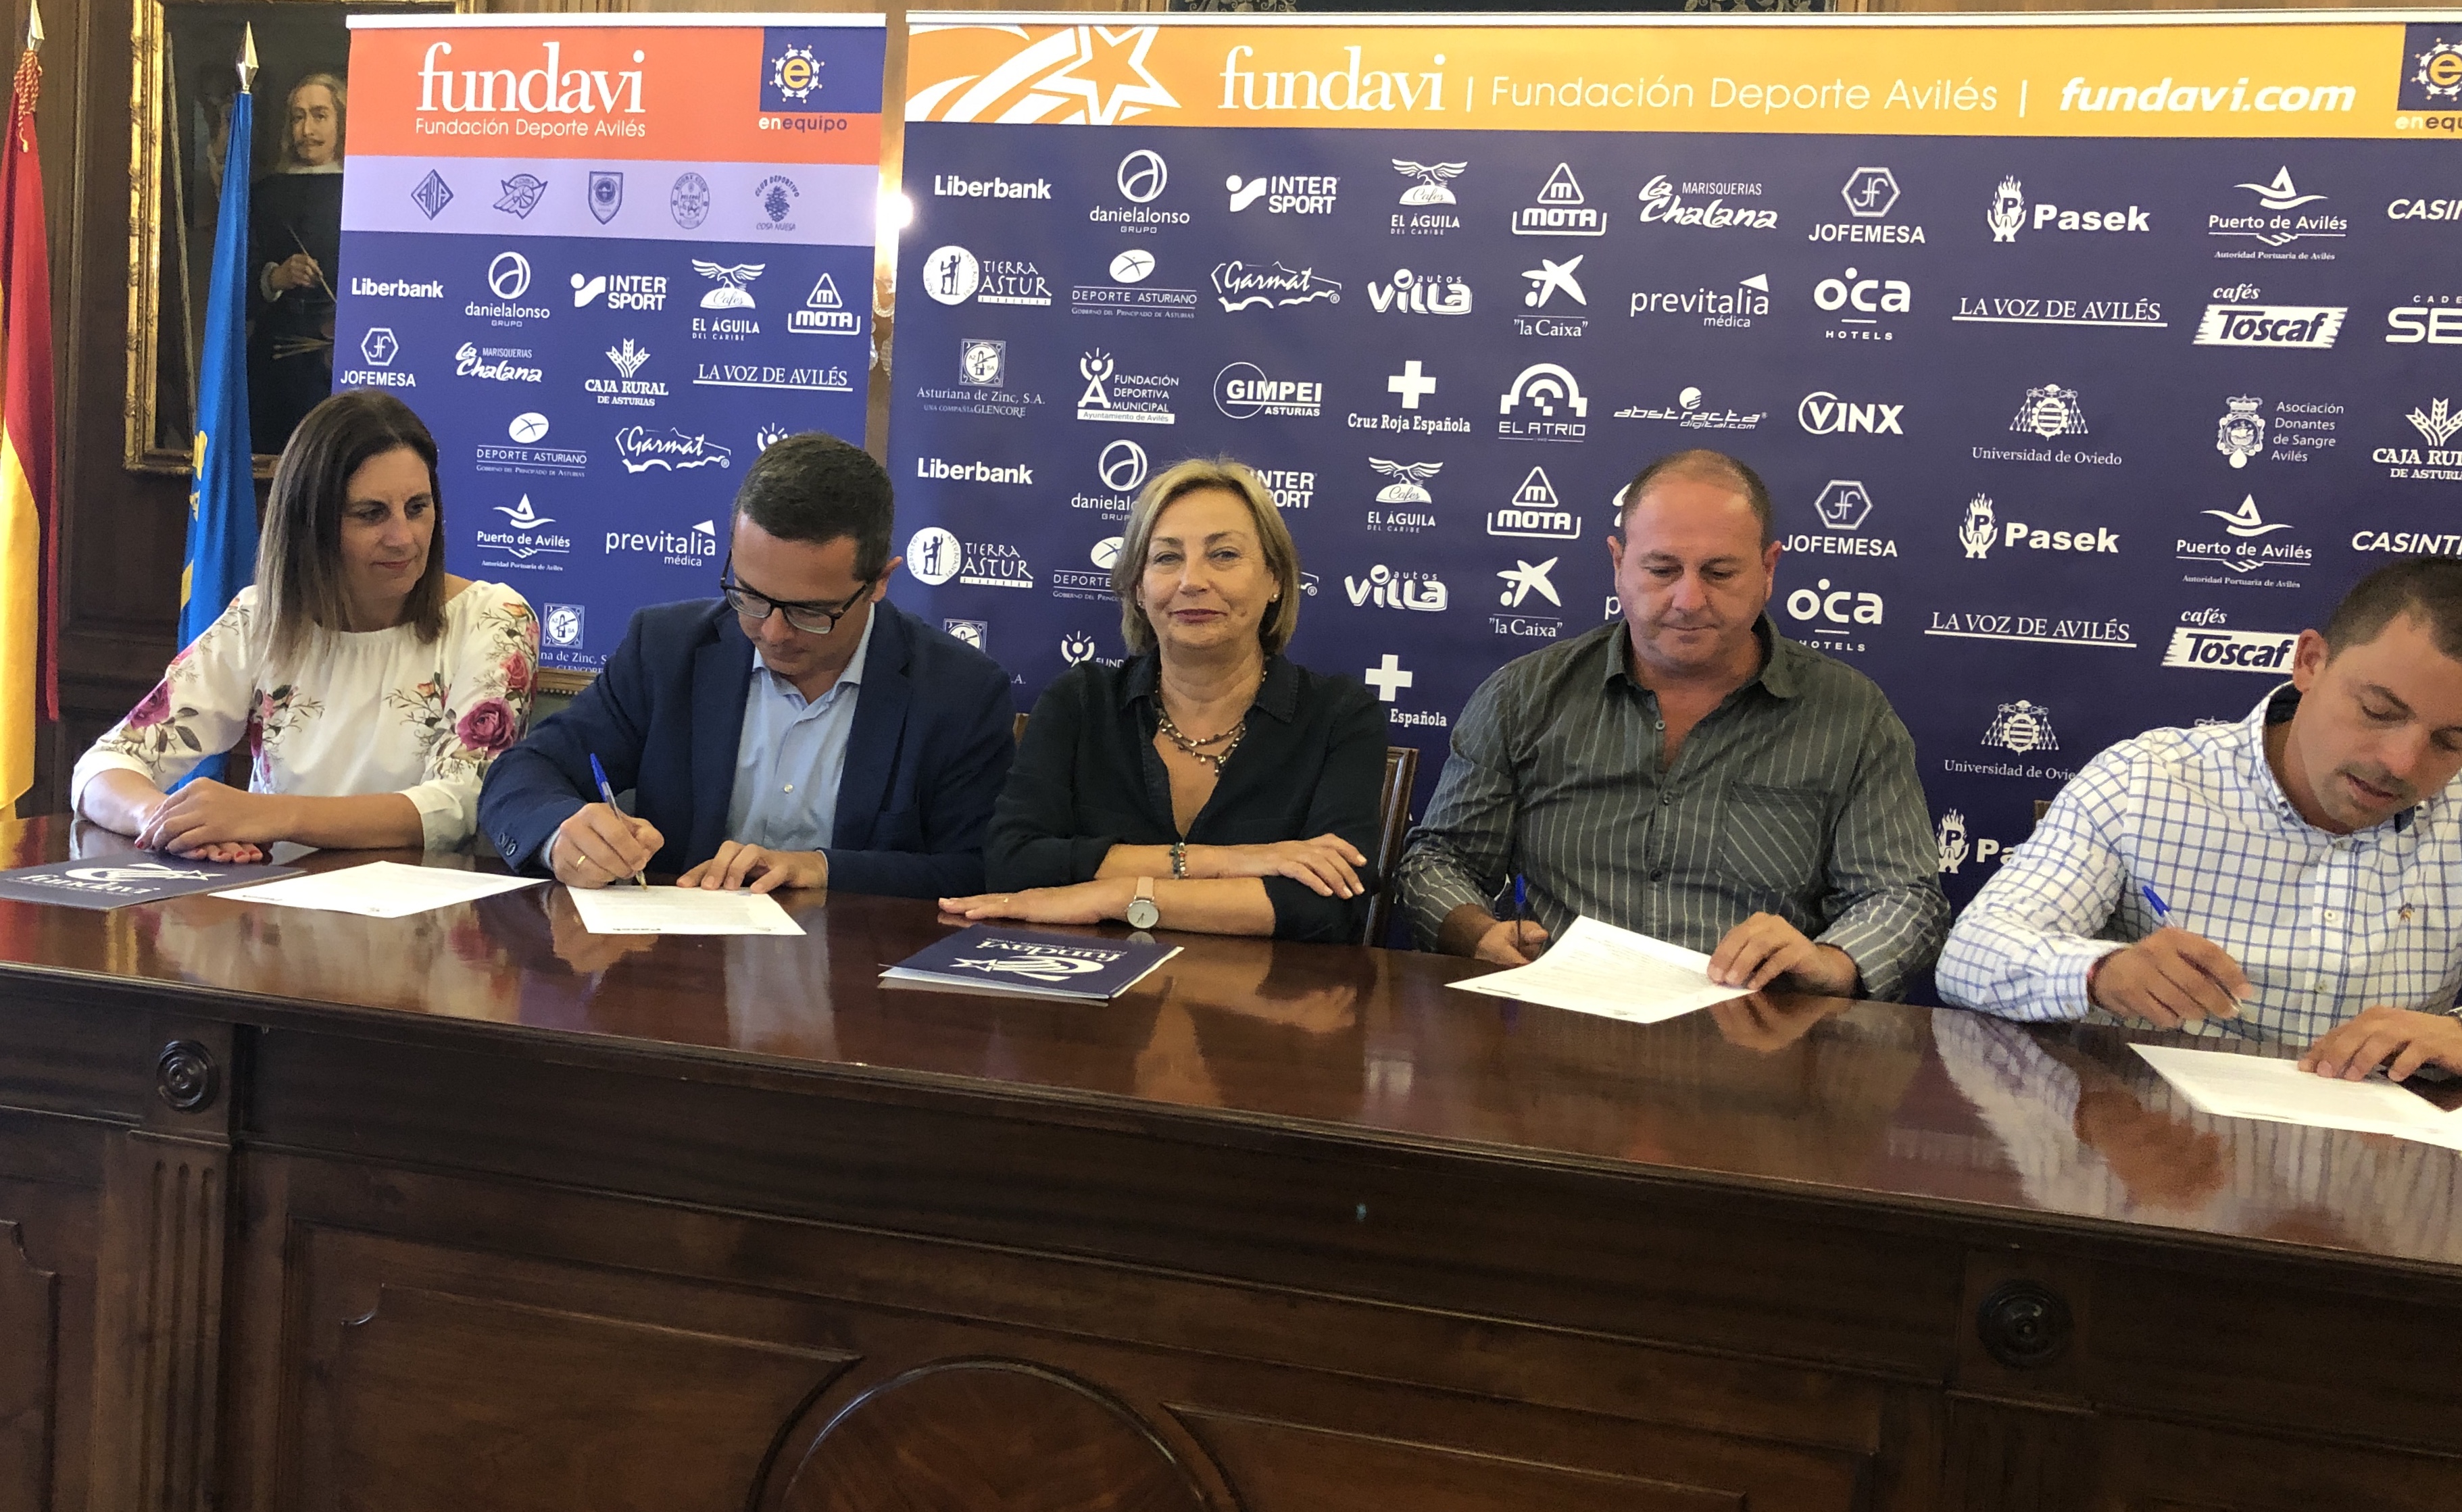 Pasek España renueva su compromiso con Fundavi hasta 2022